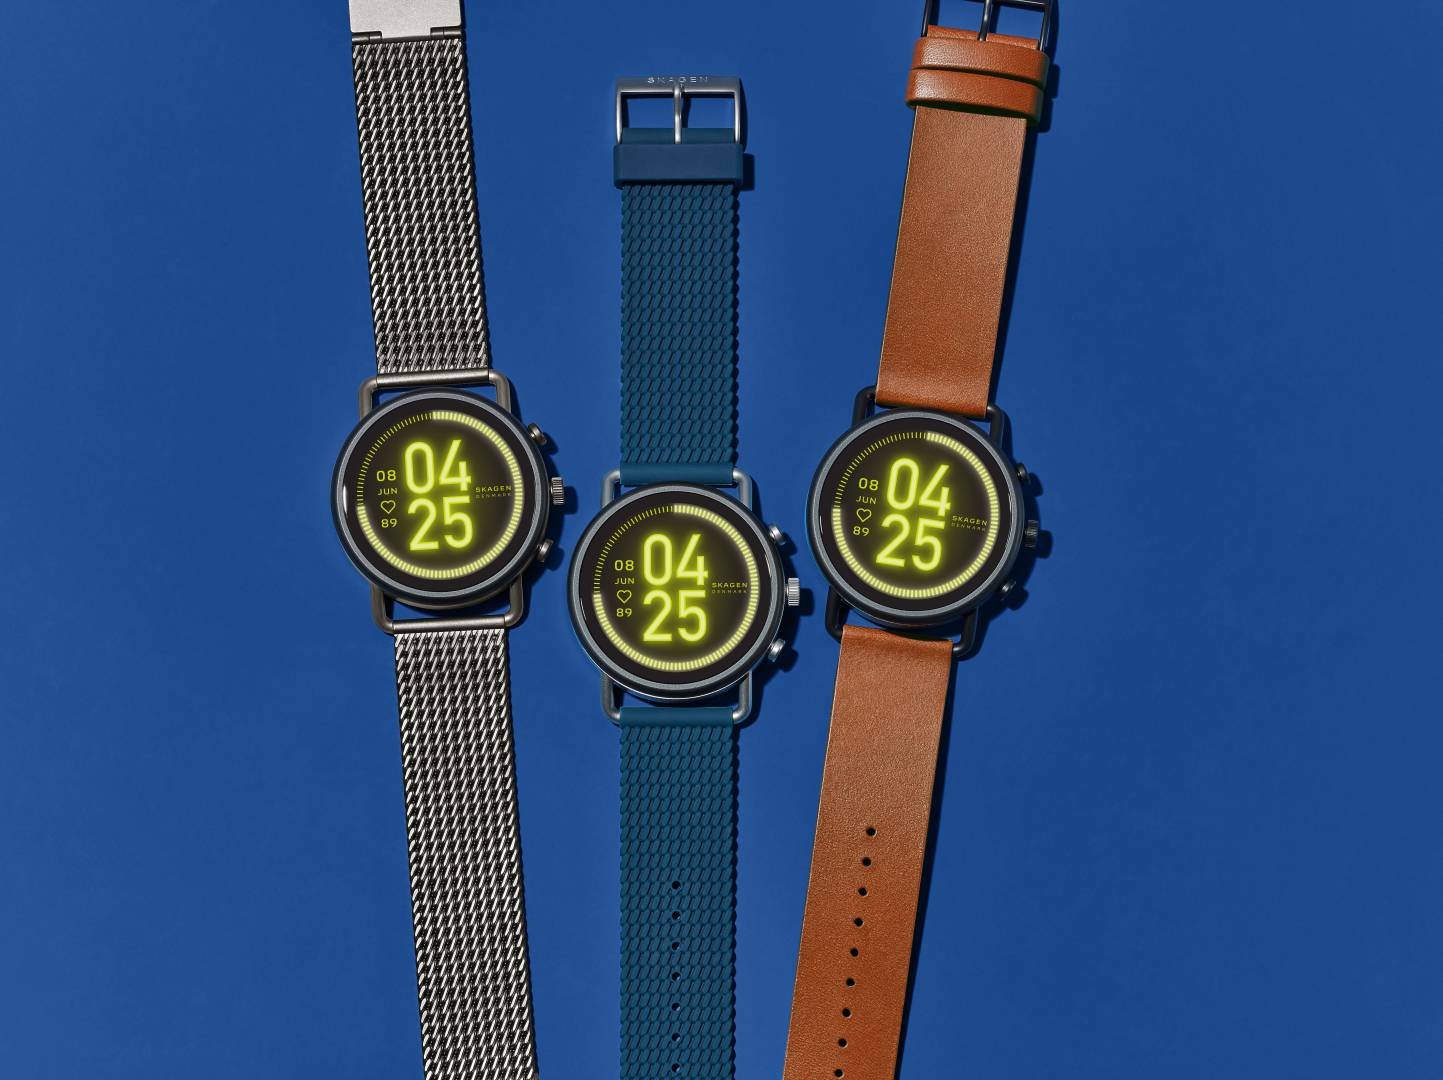 Immagine di SKAGEN Falster 3: l'elegante smartwatch è stato presentato al CES 2020